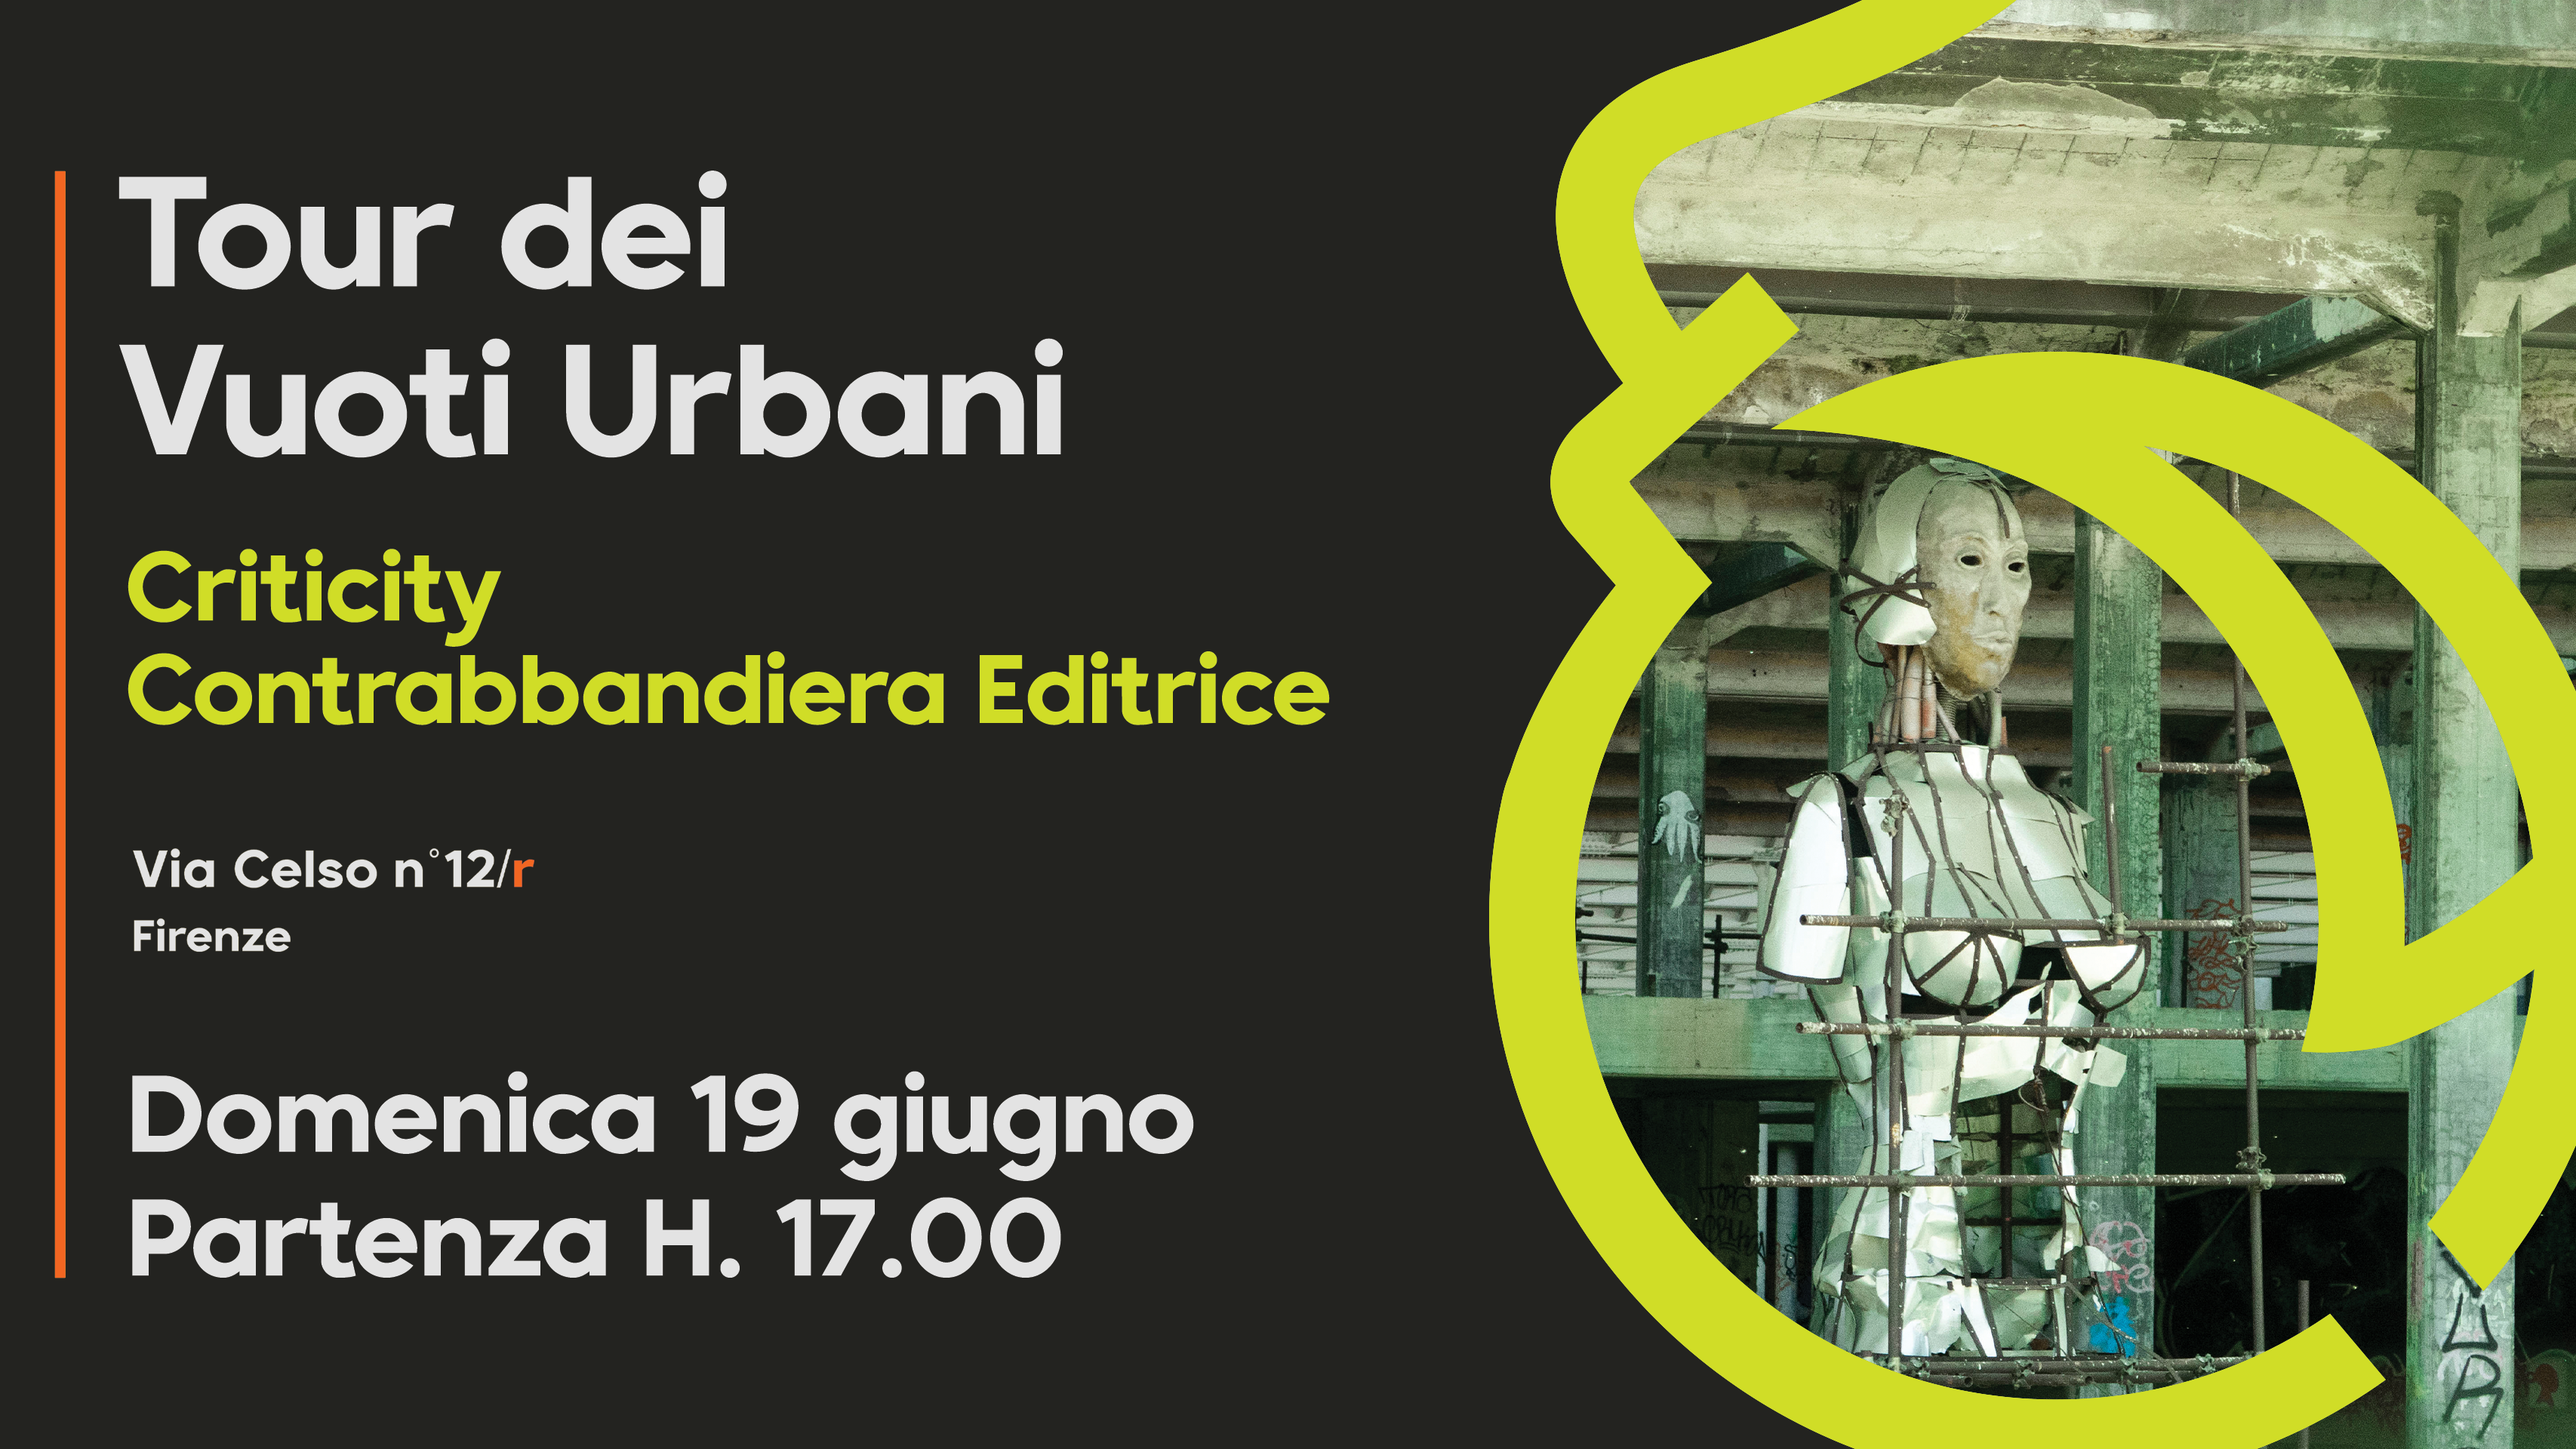 Tour dei vuoti urbani || 19.06.22 || Presentazione e tour di Rifredi con Criticity e Contrabbandiera Editrice